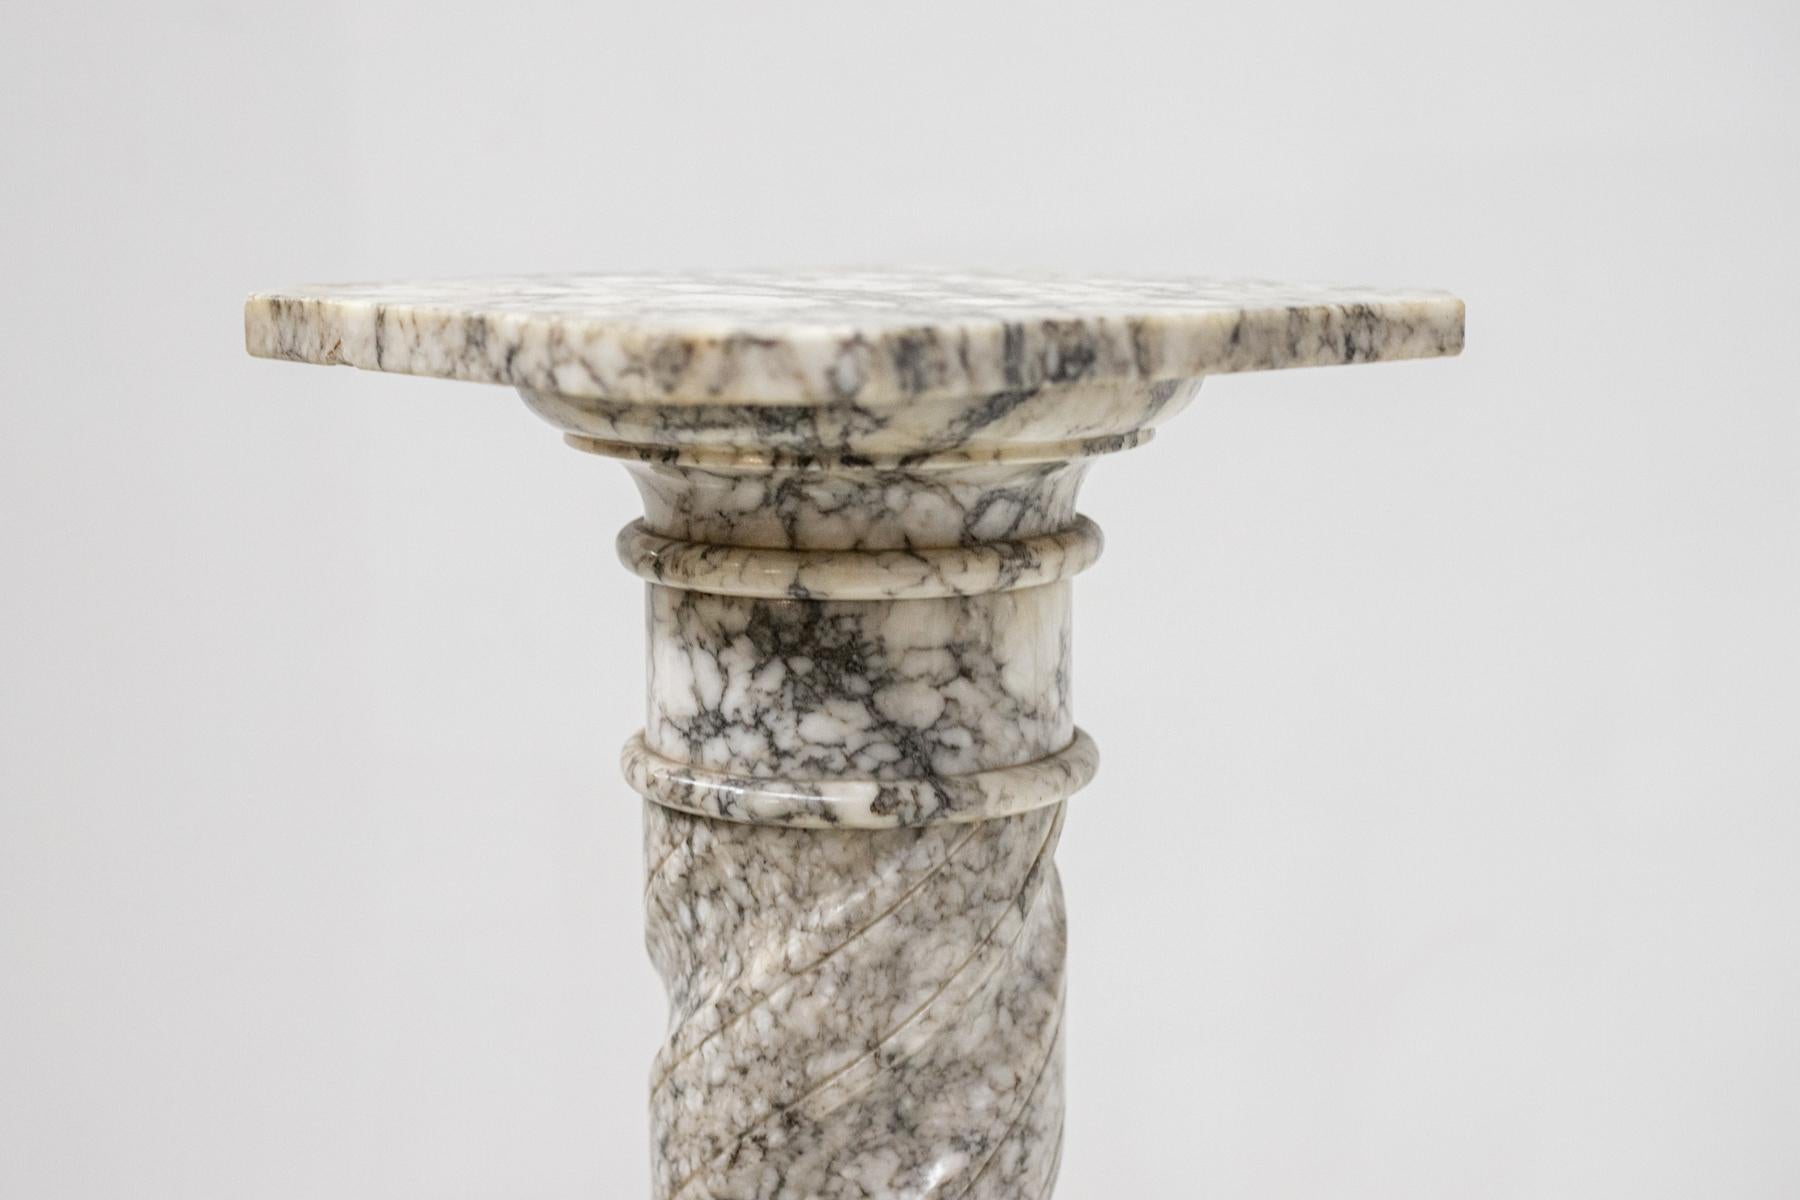 Magnifique colonne de présentation fabriquée en 1940 et de belle facture italienne.
La colonne est entièrement réalisée en marbre gris sculpté.
La base a une belle forme octogonale sur laquelle repose une deuxième base ronde supportant une belle